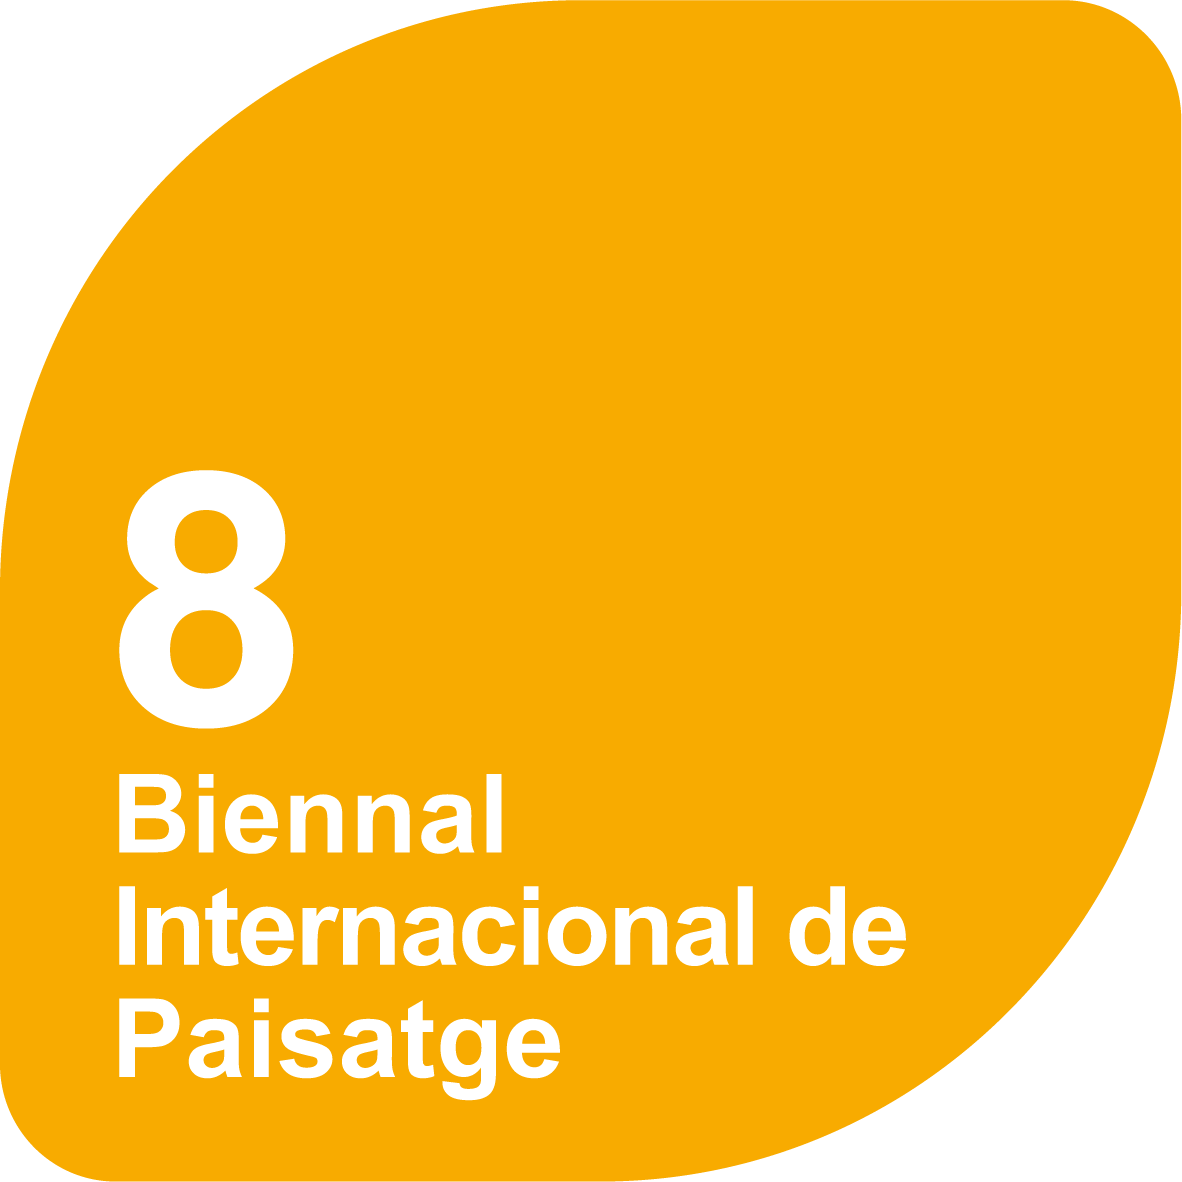 8a Biennal Internacional de Paisatge